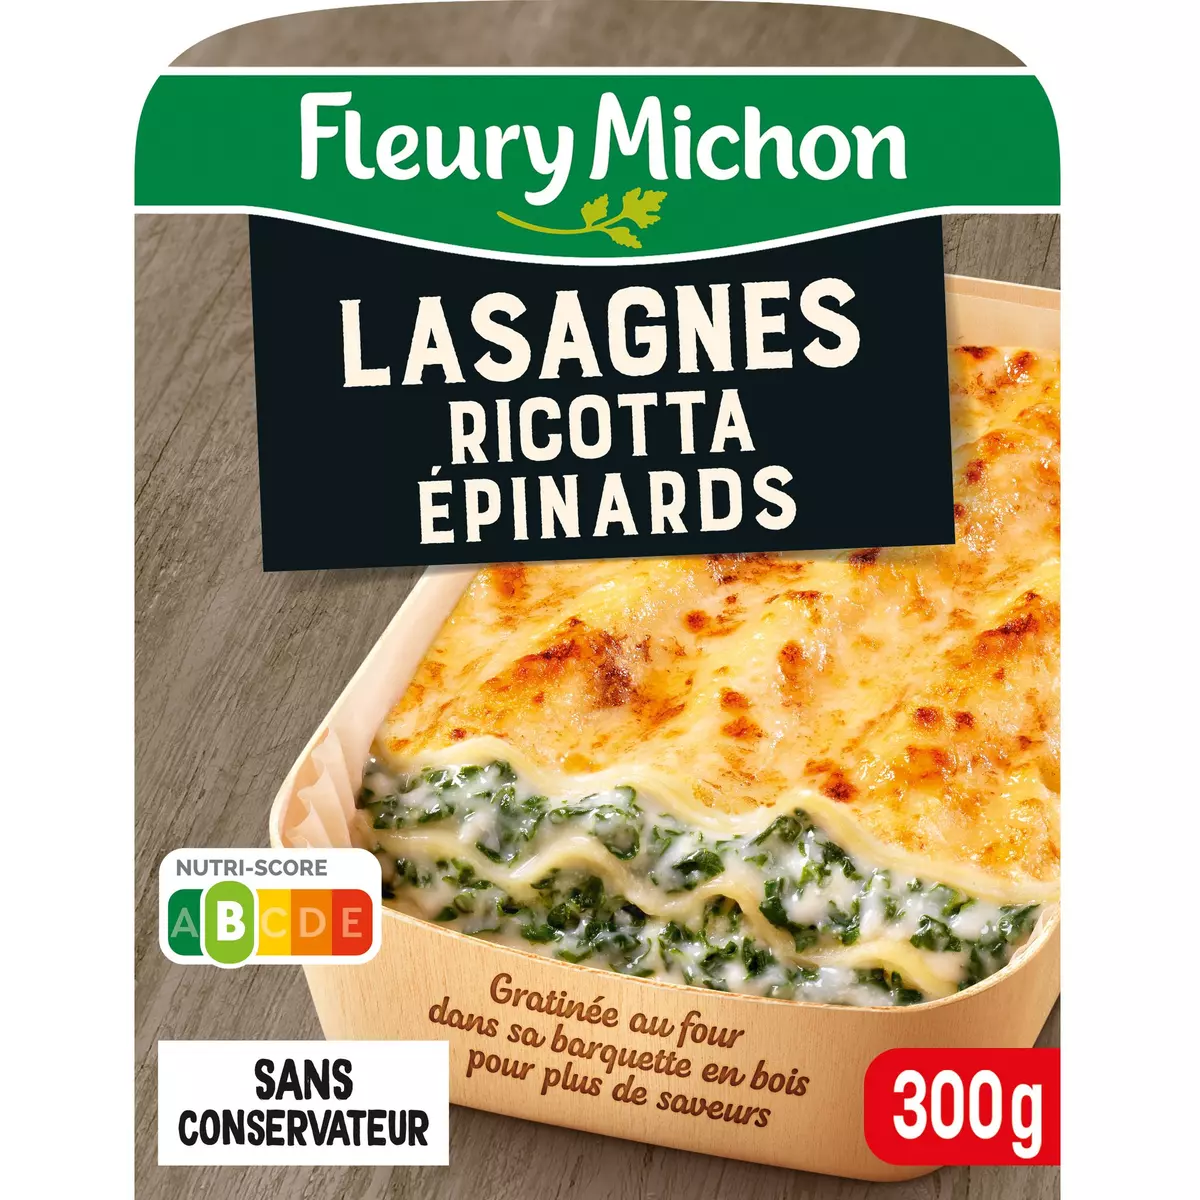 FLEURY MICHON Lasagnes ricotta épinards 1 portion 300g